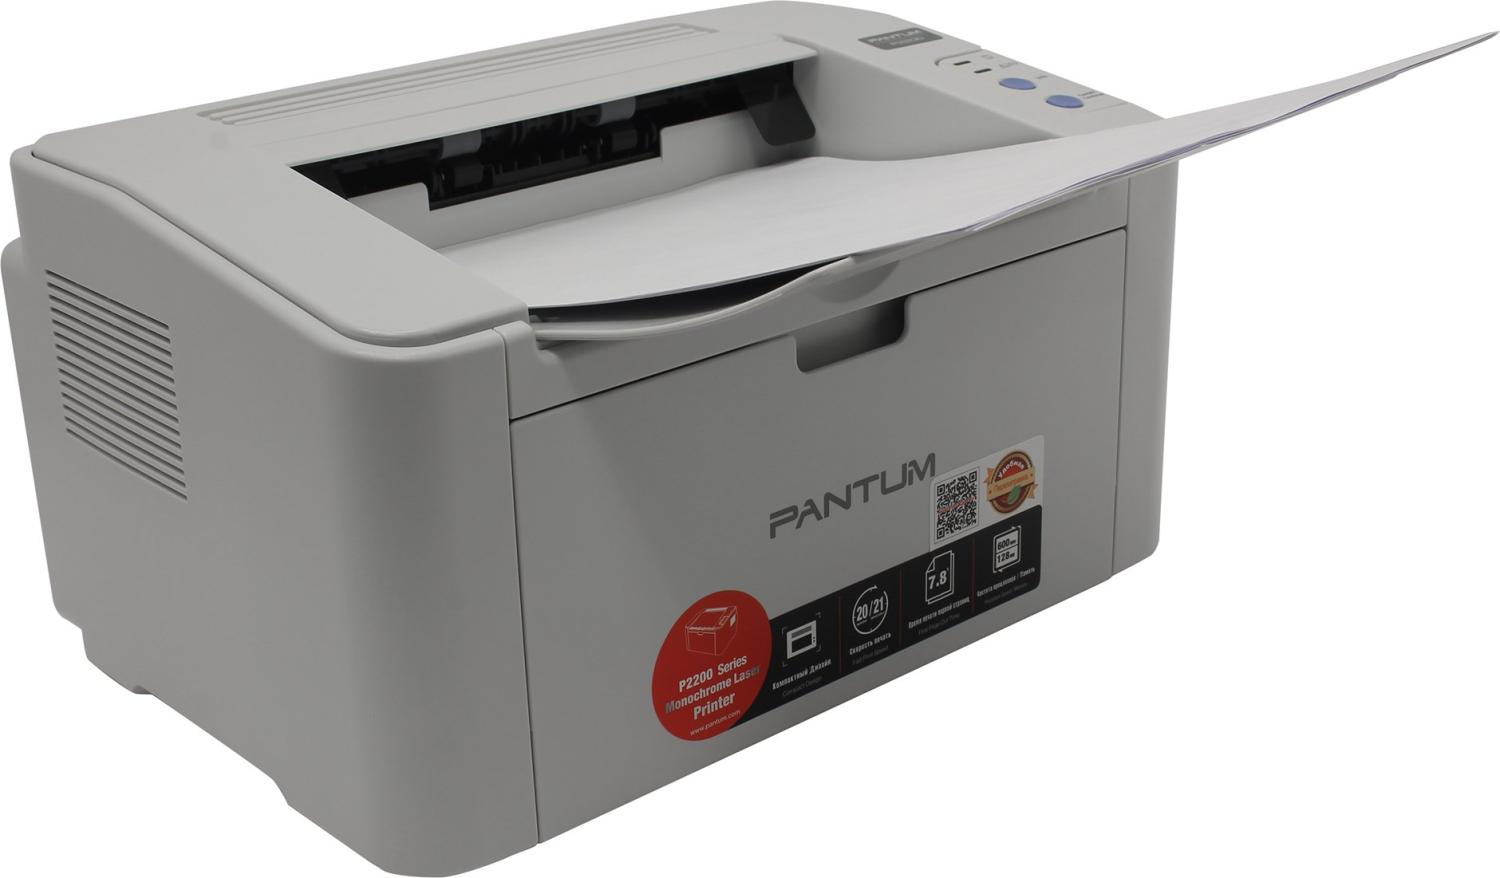 Принтер лазерный Pantum P2200 (A4, 128Mb, 20 стр / мин,1200*1200dpi, USB2.0, PC-211EV) белый